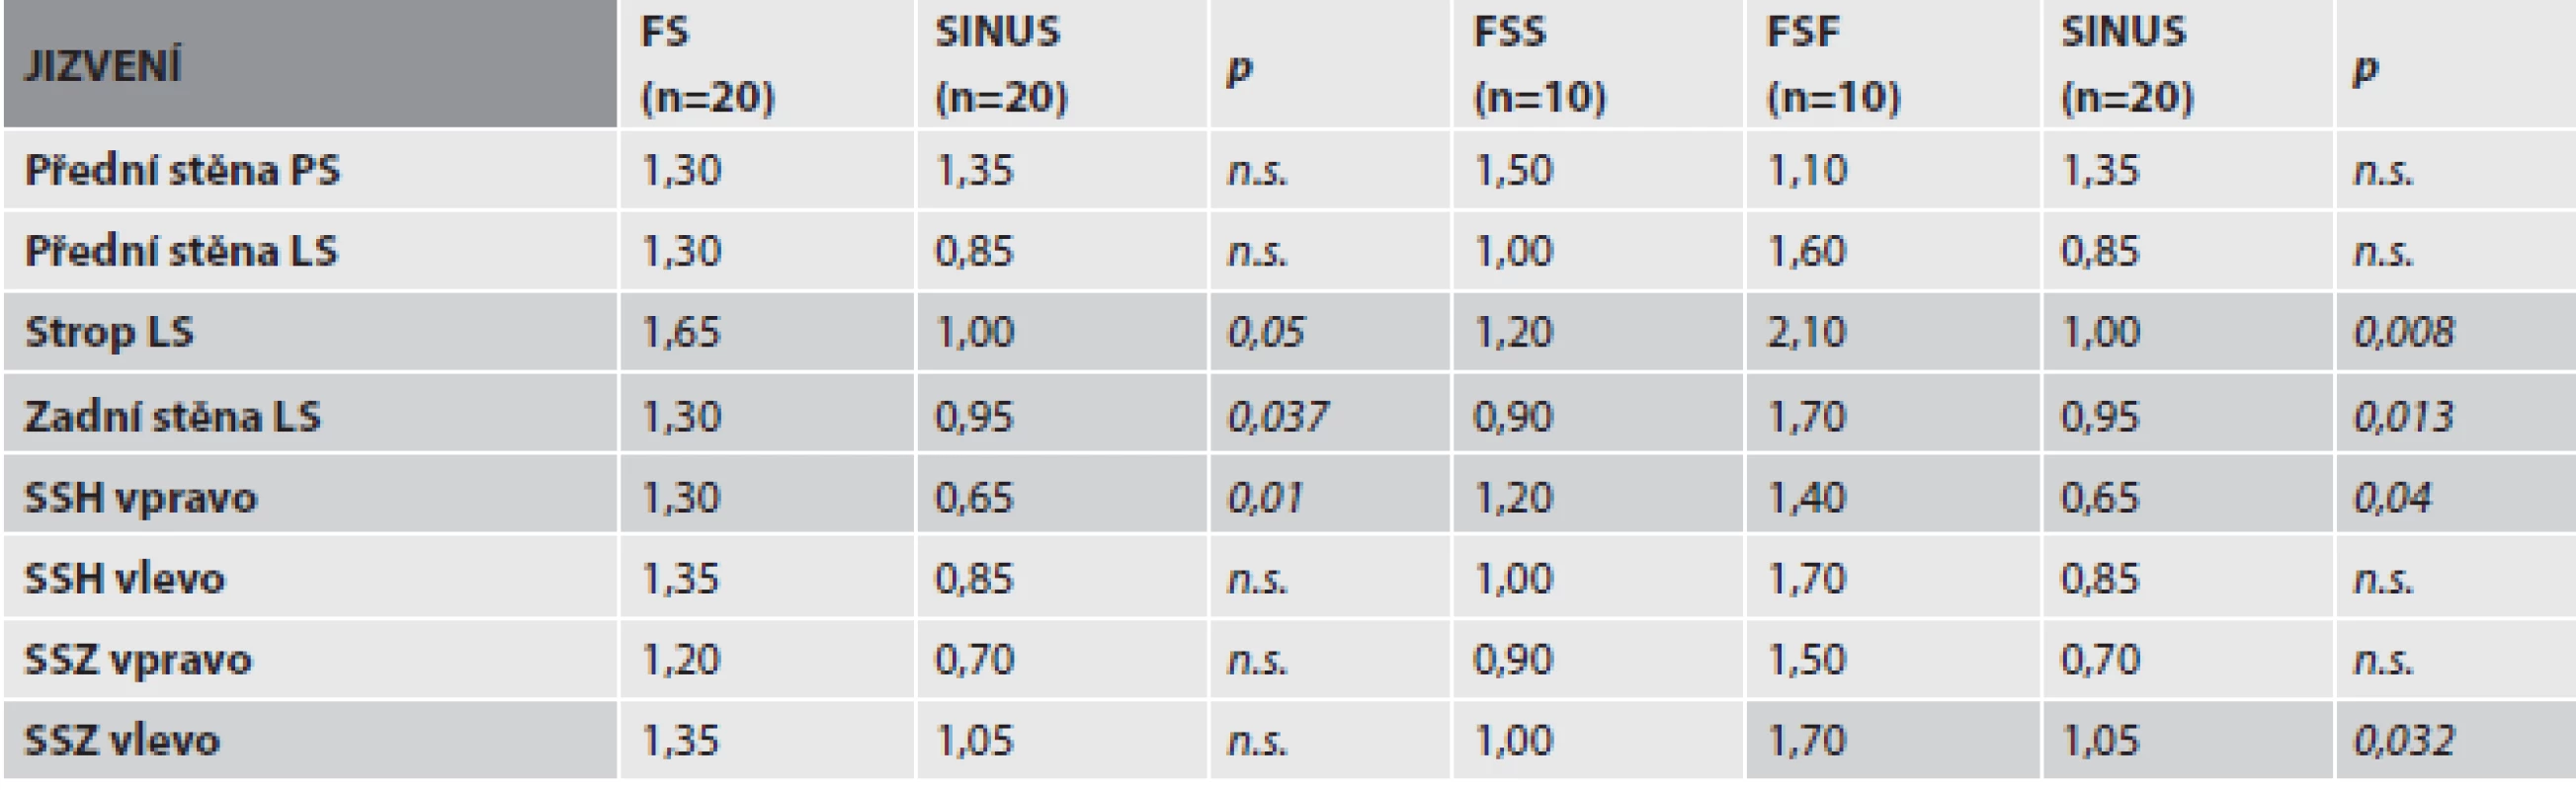 Tabulka 2. Porovnání morfologických změn mezi dvěma (FS, SINUS) a třemi (FSS, FSF, SINUS) skupinami.
a) Tíže jizvení v jednotlivých oddílech srdečních síní.